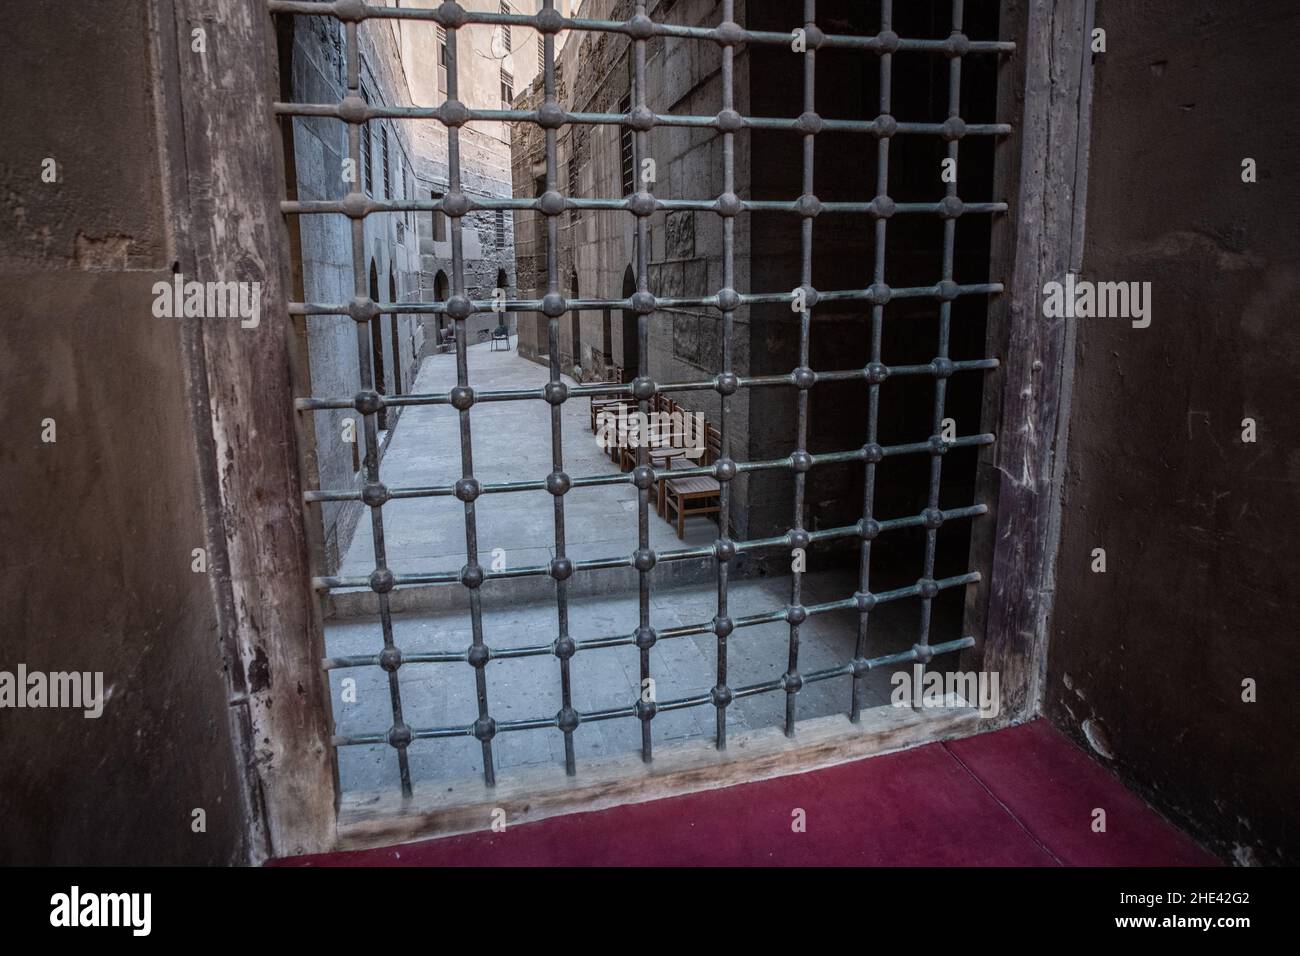 Barre di metallo attraverso una vecchia porta o finestra nella moschea madrassa di al sultan hassan nel quartiere storico del Cairo, Egitto. Foto Stock